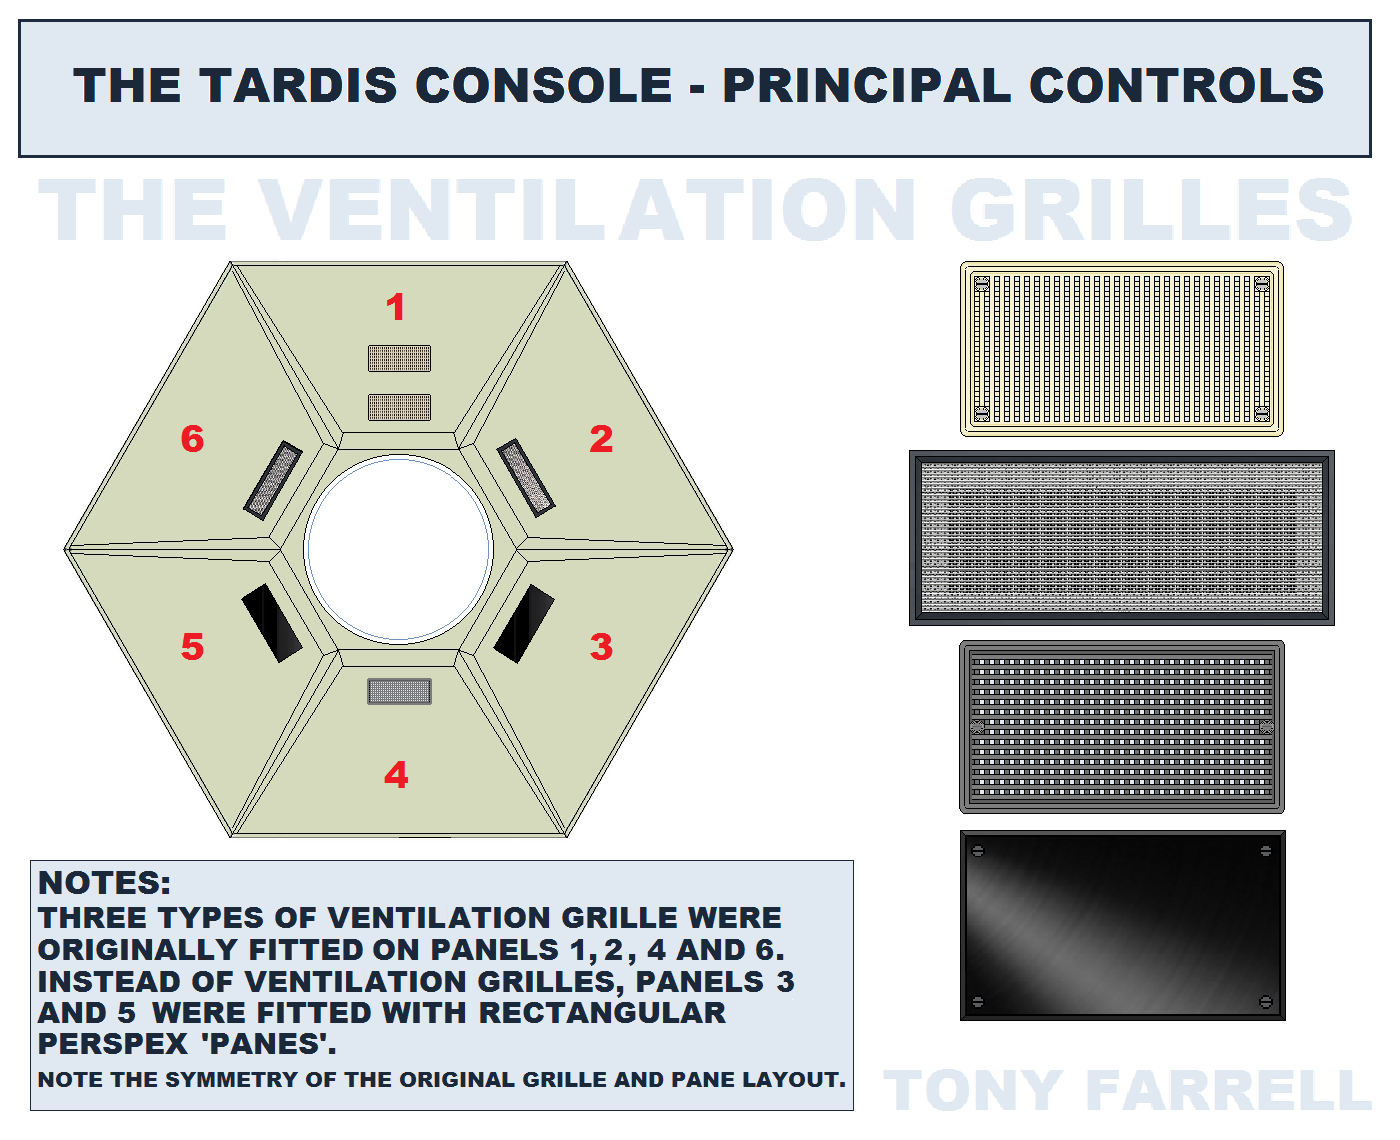 console ventiliation grilles symmetry.png